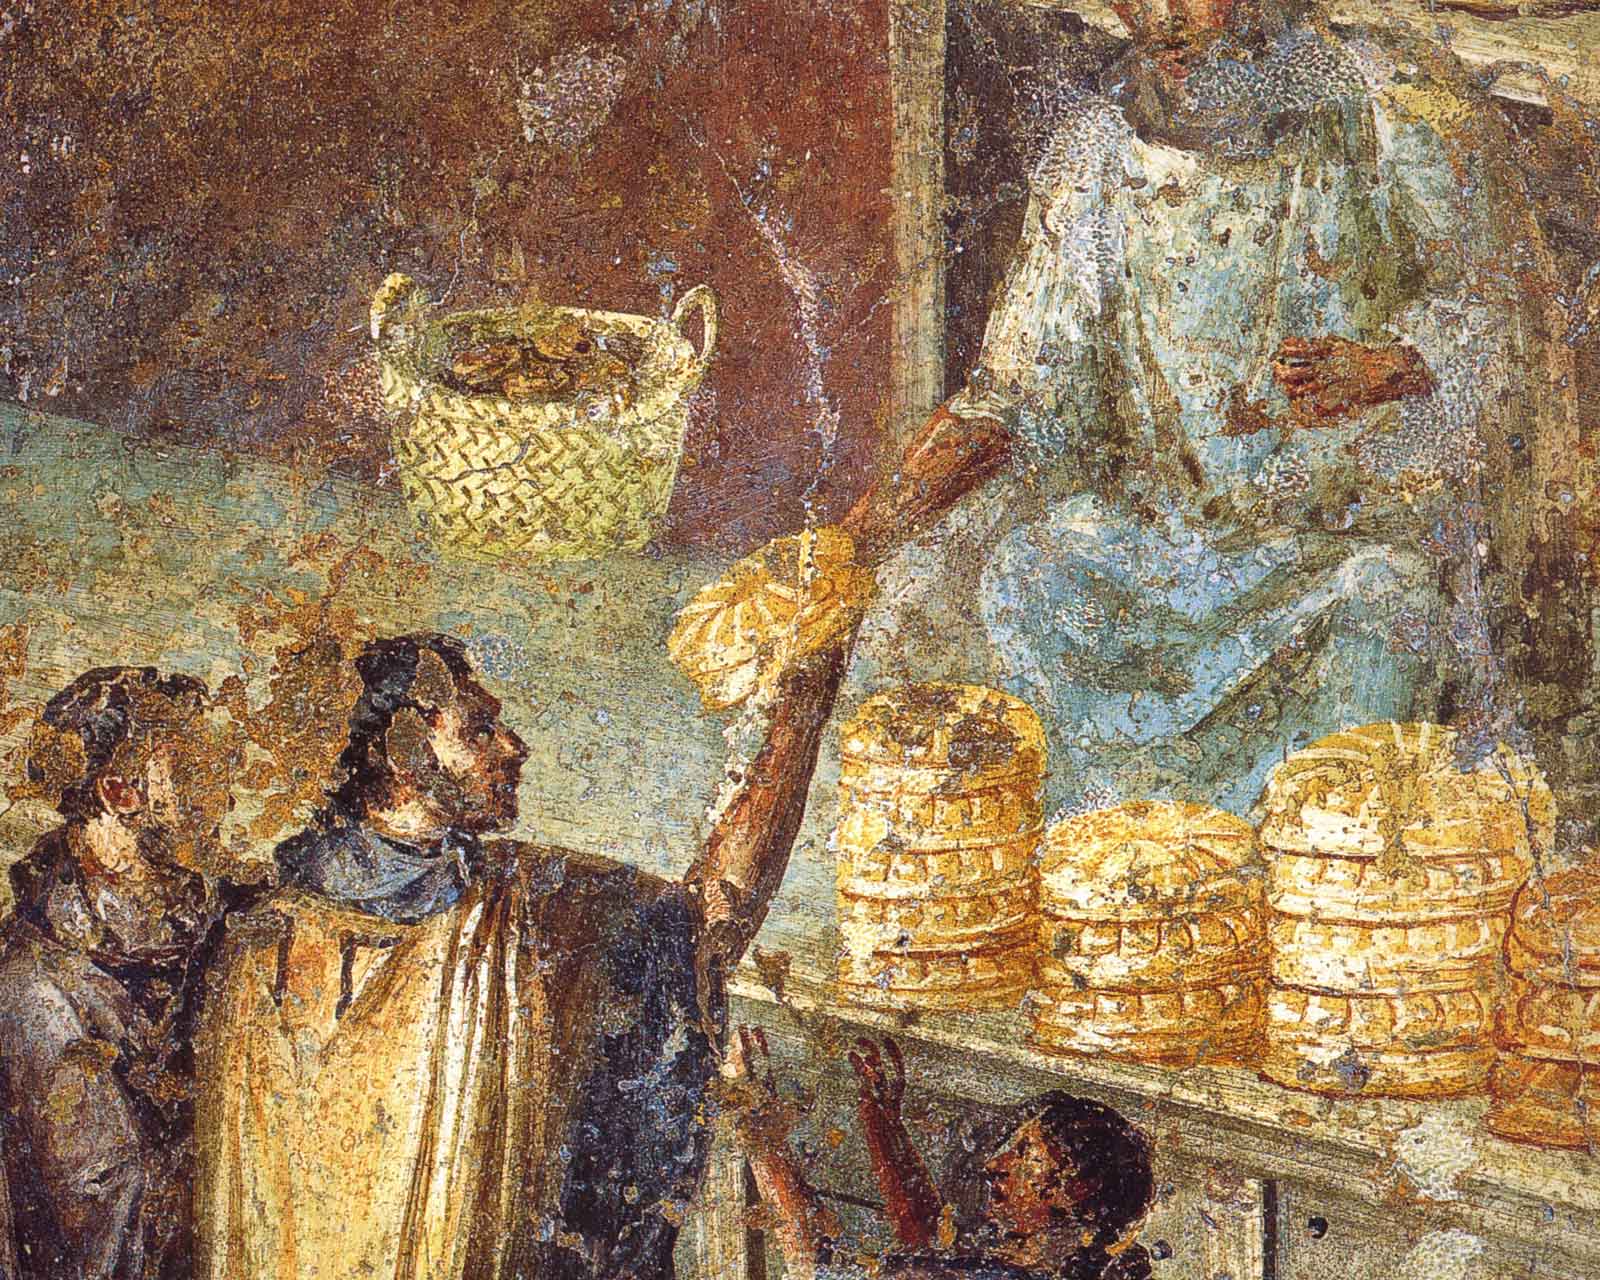 Эдил, раздающий хлеб городской бедноте. Фреска из Помпеи.